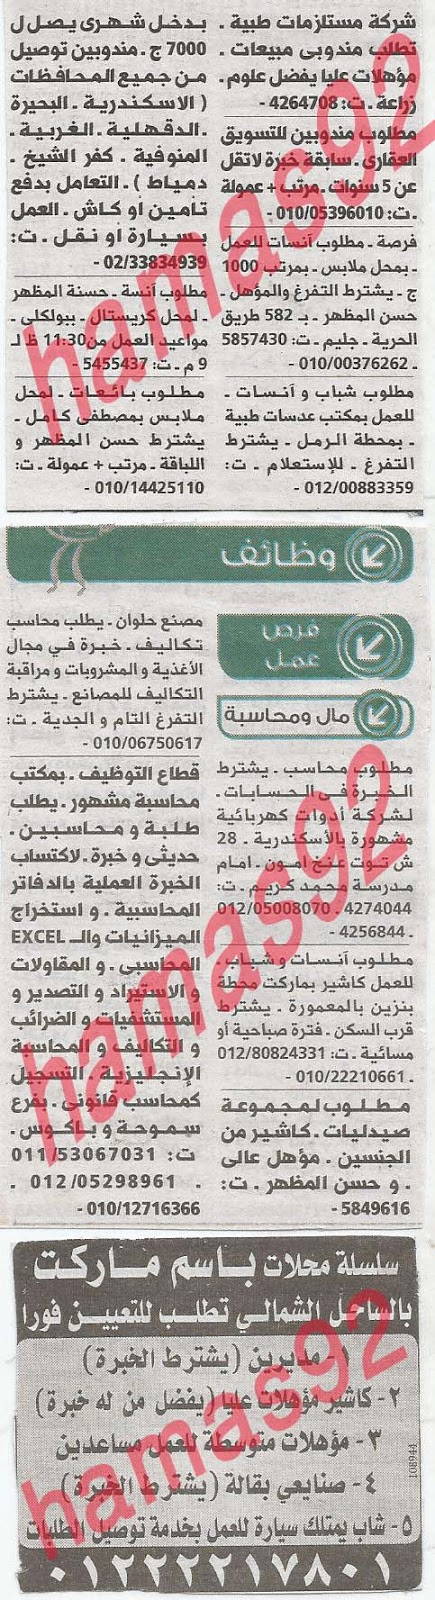 وظائف خالية فى جريدة الوسيط الاسكندرية الثلاثاء 23-04-2013 %D9%88+%D8%B3+%D8%B3+10